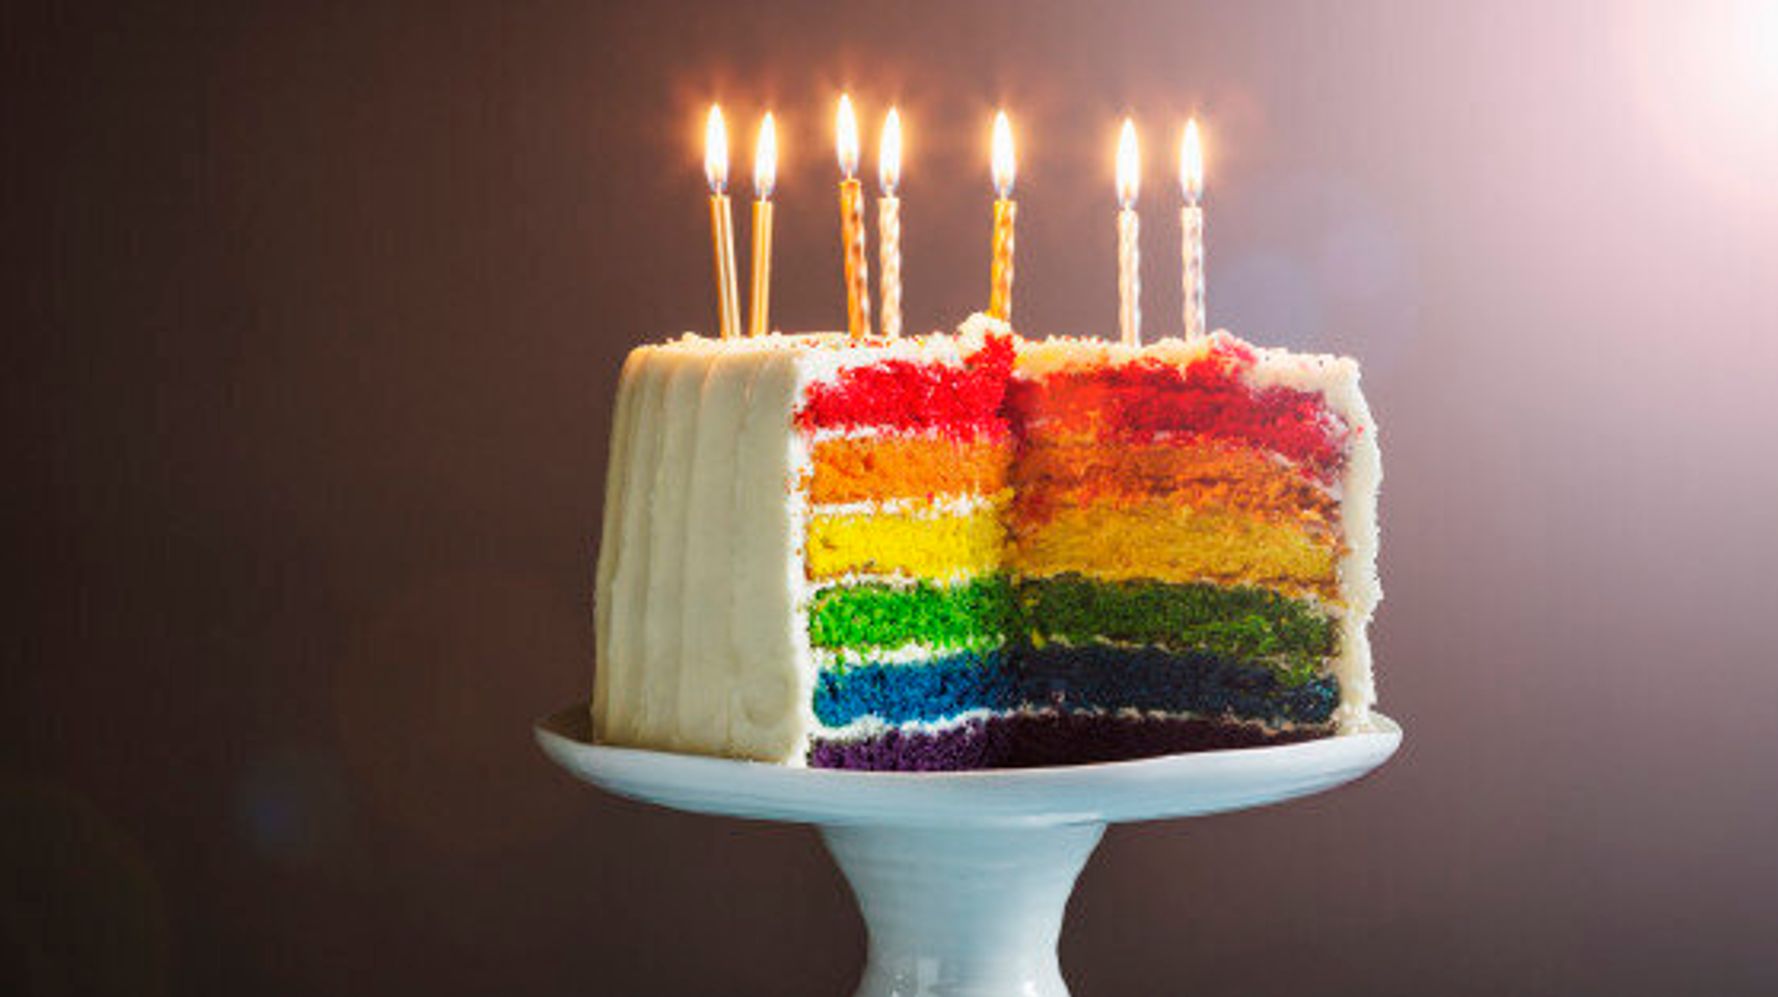 Mission gâteaux d'anniversaire maison faciles et bluffants ! • Les